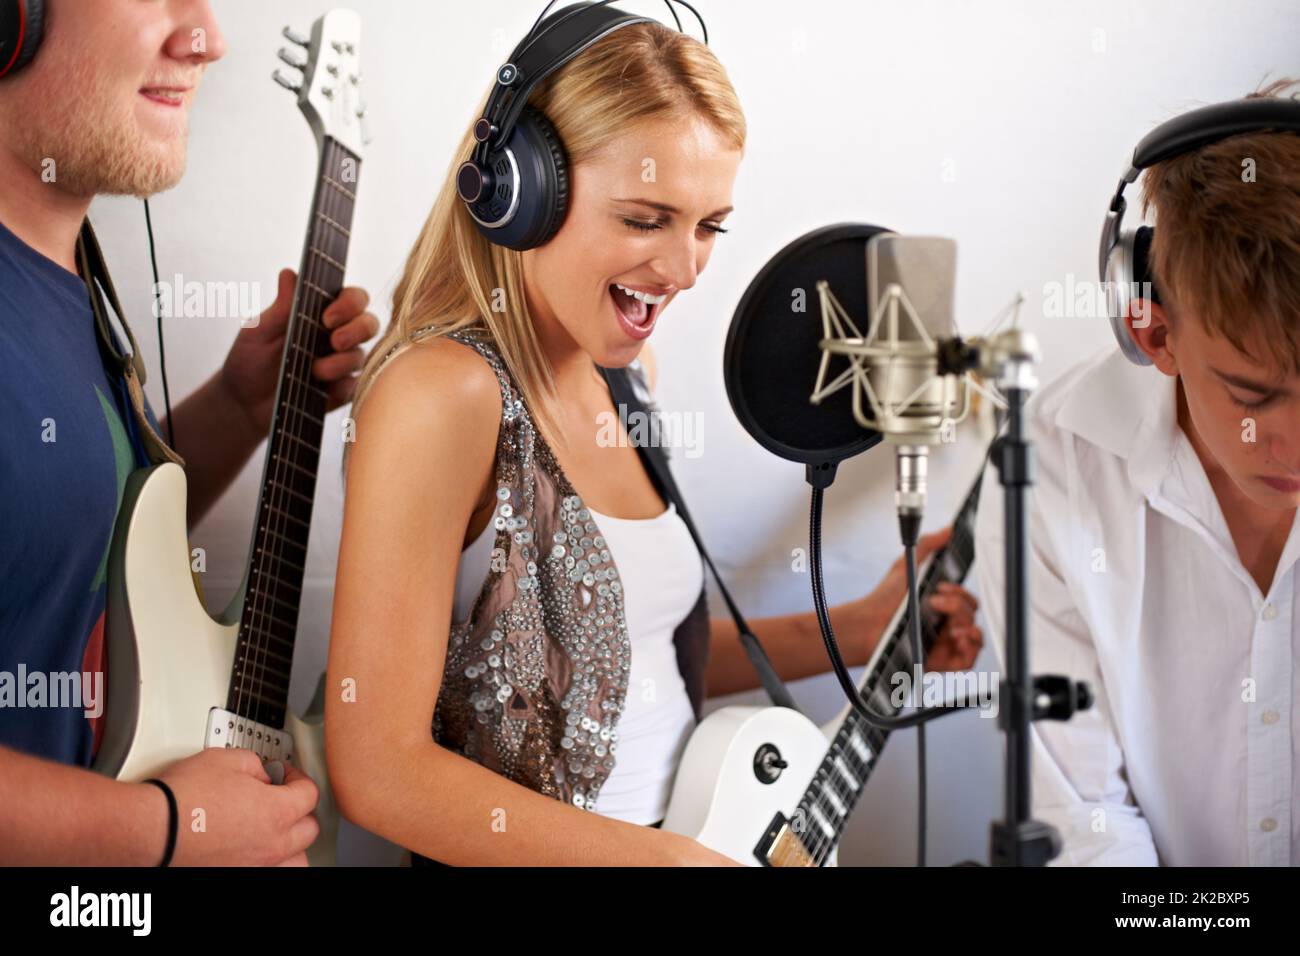 Rockt aus. Eine schöne junge blonde Frau singt, während ihre beiden Bandmitglieder im Hintergrund Musik machen. Stockfoto